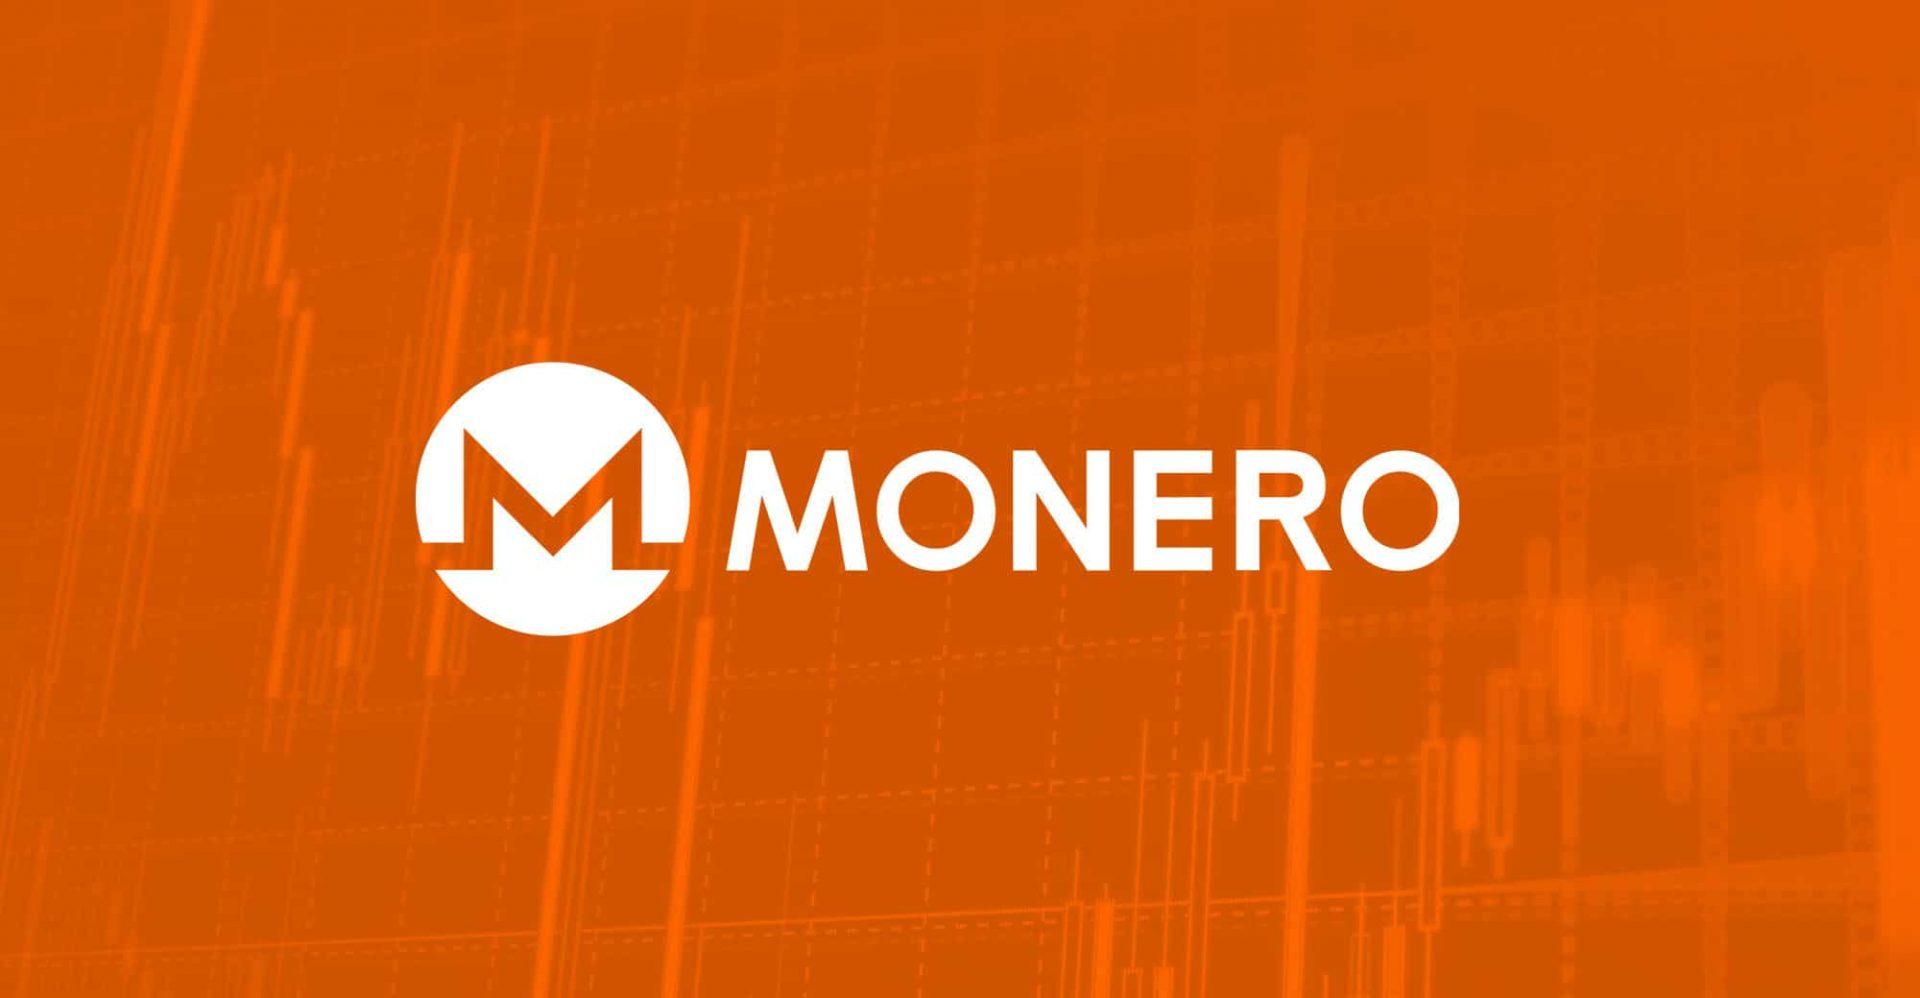 Monero'nun bu gizlilik odaklı özellikleri, kullanıcıların işlemlerini ve hesap bakiyelerini tamamen gizli tutarak, Monero'nun takip edilemez ve anonim bir kripto para birimi olmasını sağlar.